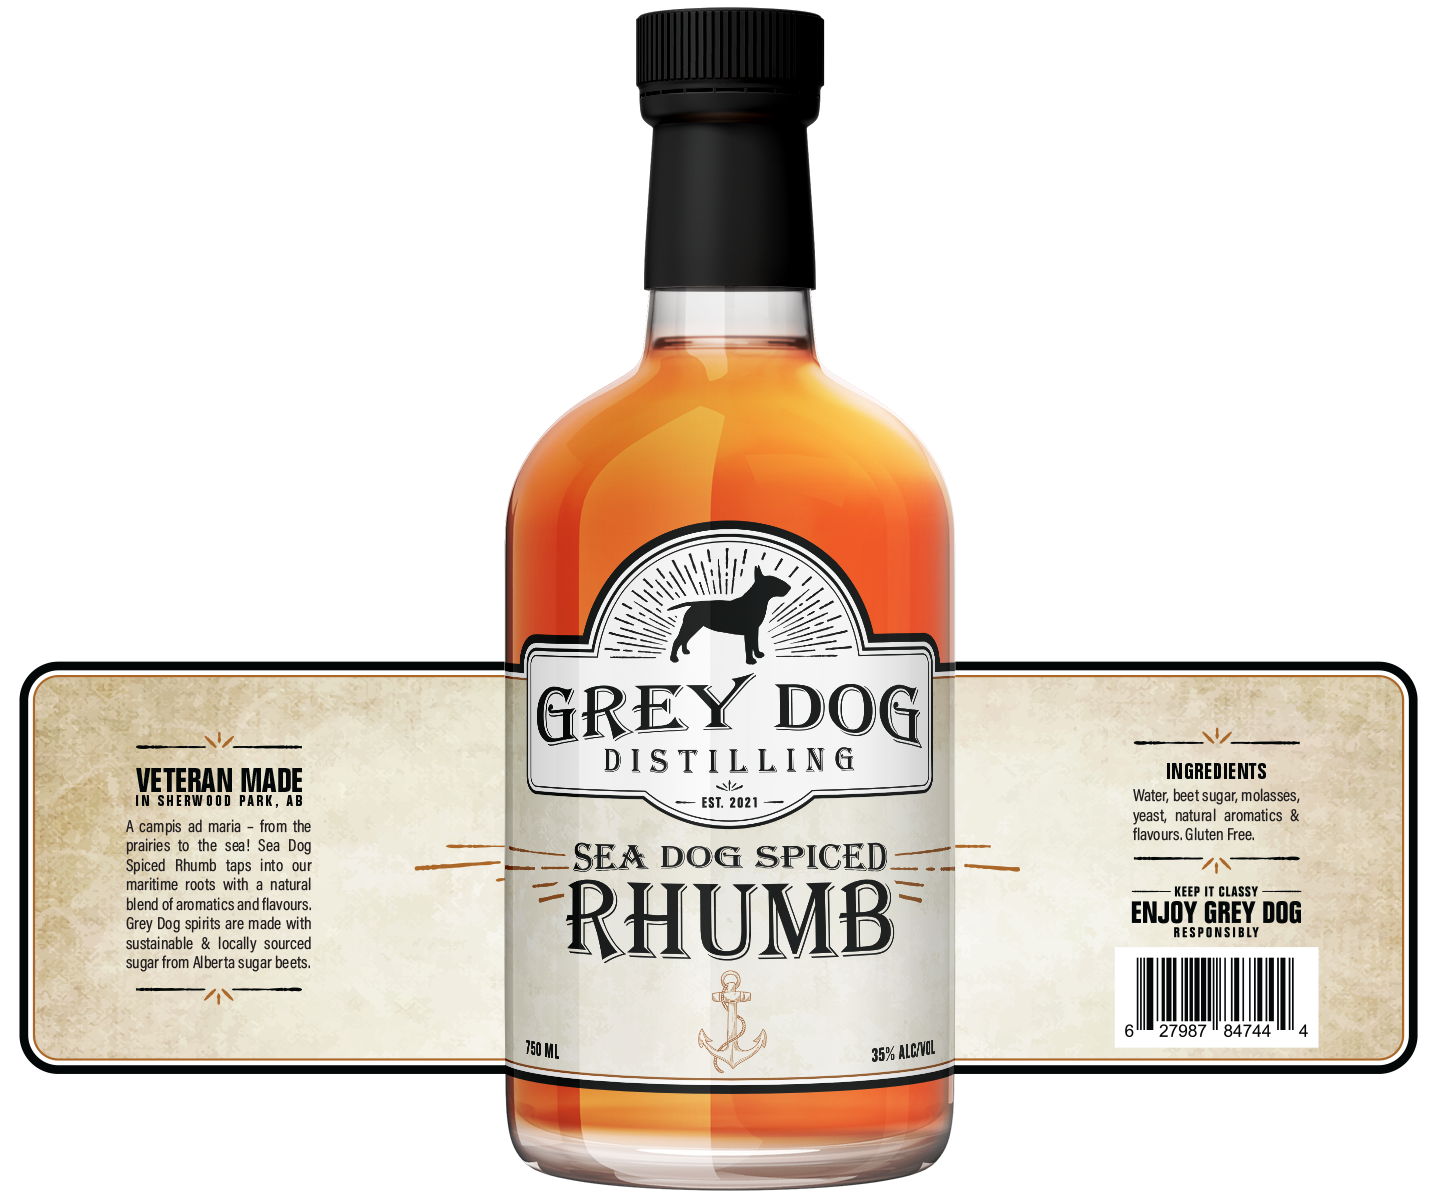 Grey Dog Distilling Sea Dog Spiced Rhumb Label Design